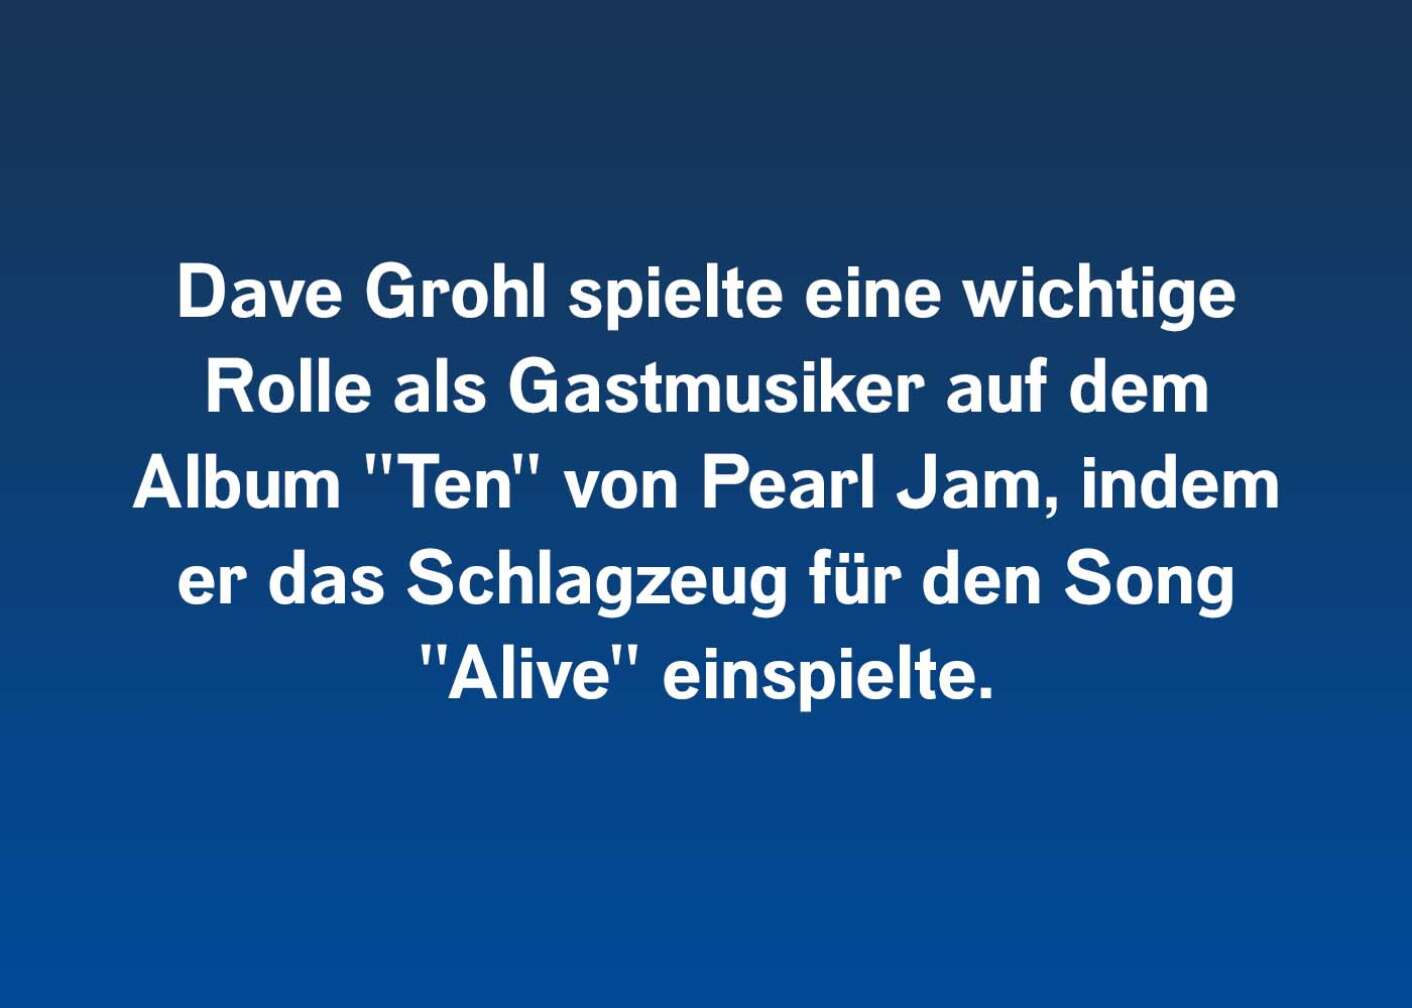 Dave Grohl spielte eine wichtige Rolle als Gastmusiker auf dem Album "Ten" von Pearl Jam, indem er das Schlagzeug für den Song "Alive" einspielte.